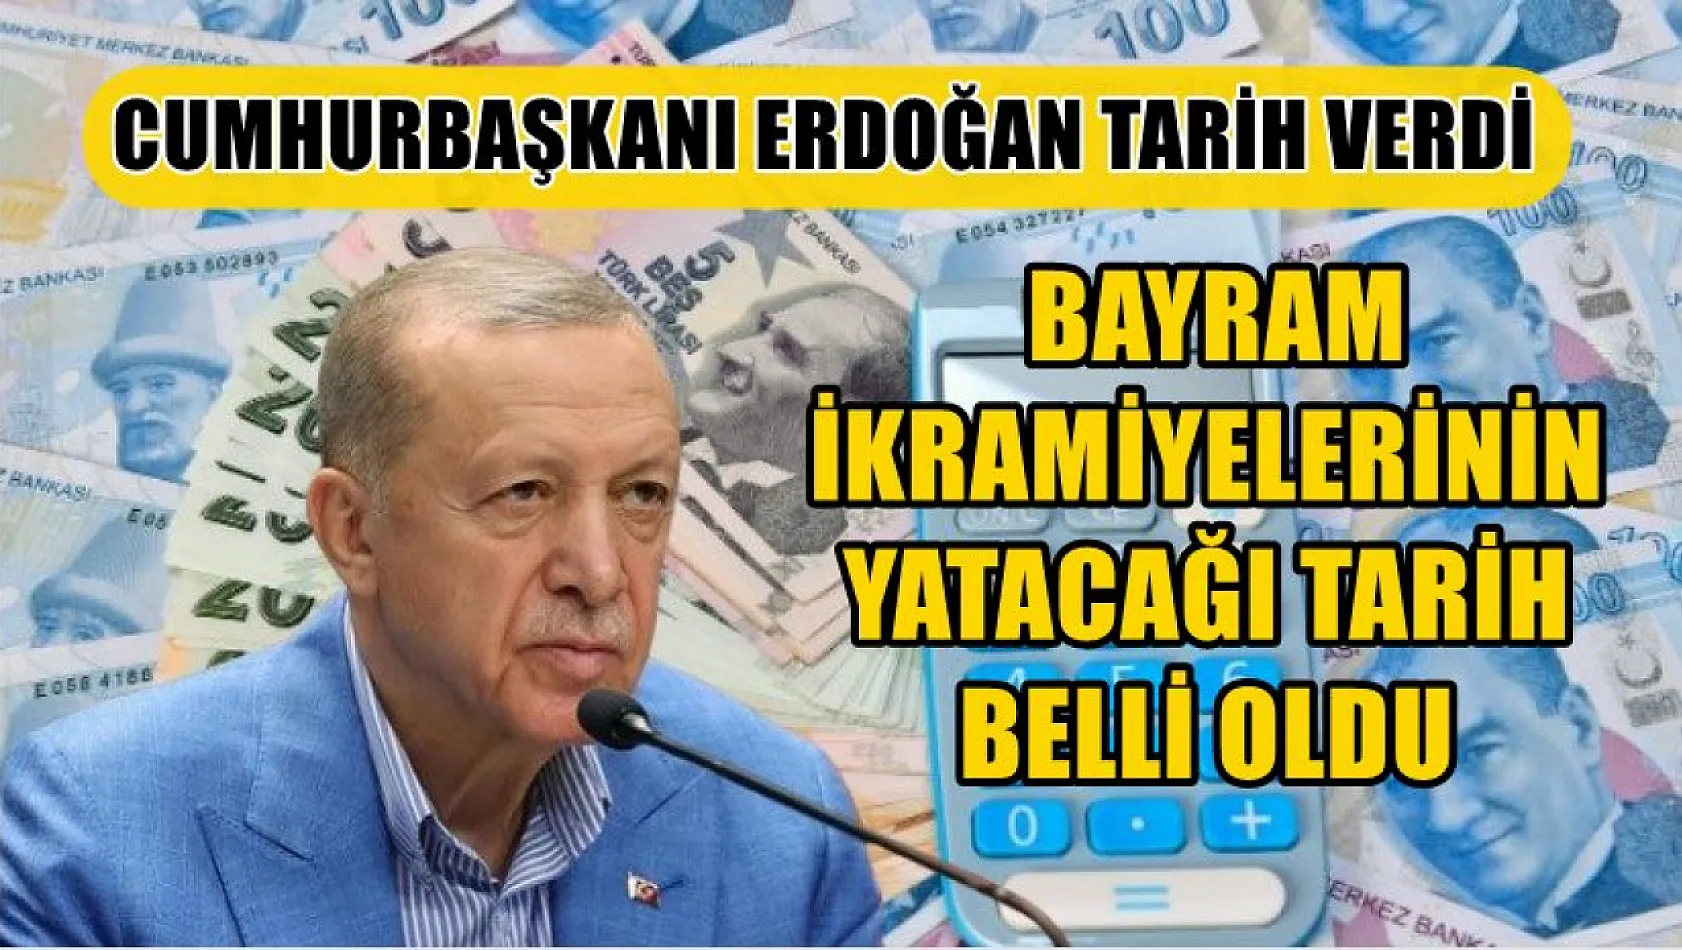 Cumhurbaşkanı Erdoğan tarih verdi, bayram ikramiyelerinin yatacağı tarih belli oldu